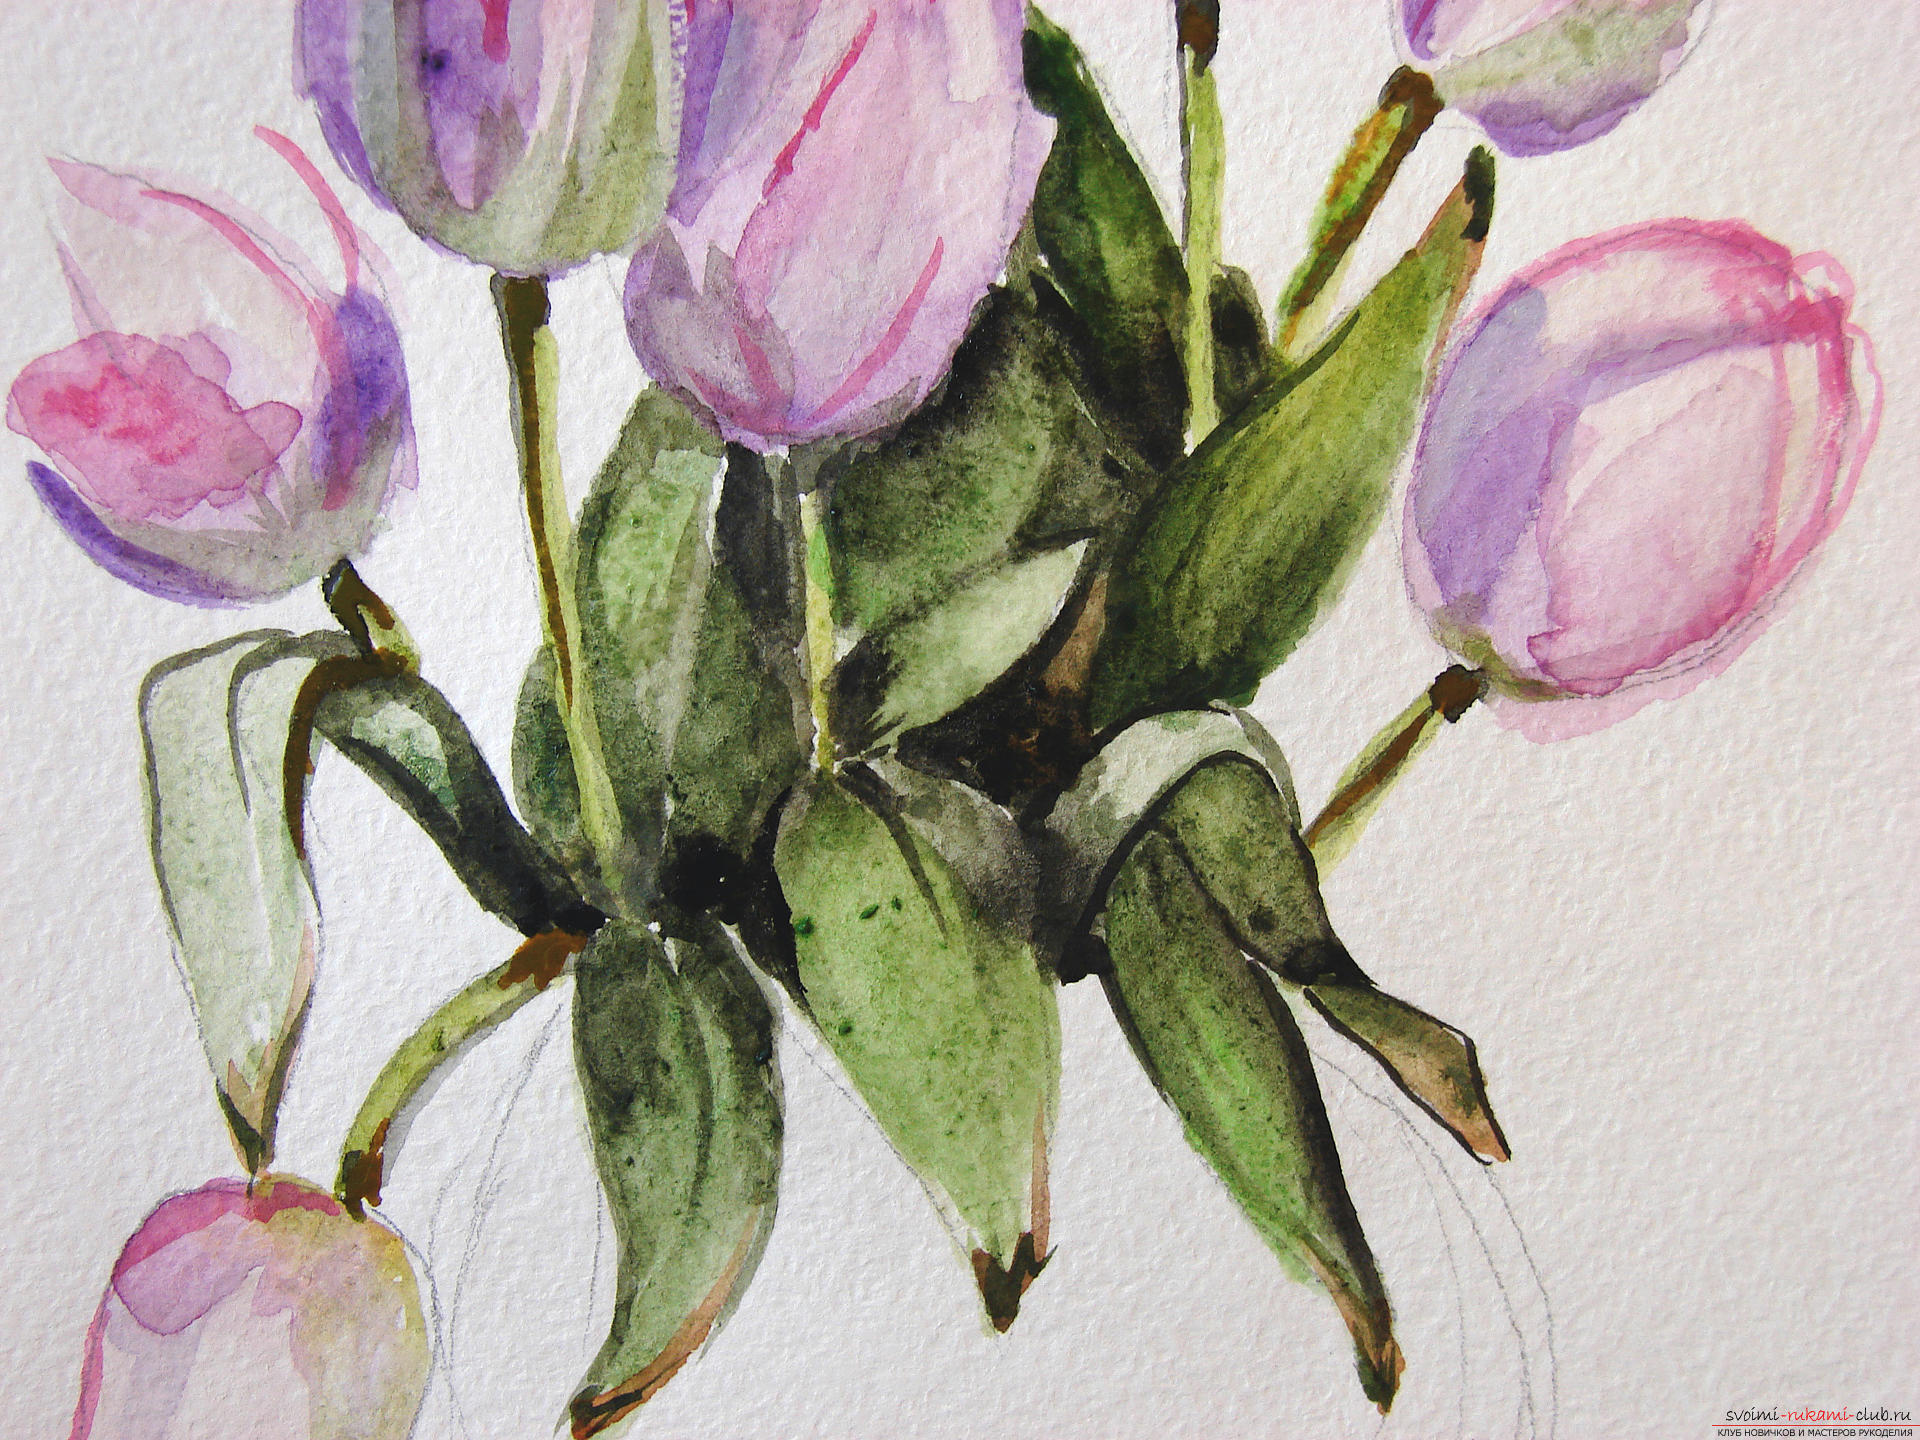 Мастер-класс по рисованию с фото научит как нарисовать цветы, подробно описав как рисуются тюльпаны поэтапно.. Фото №15